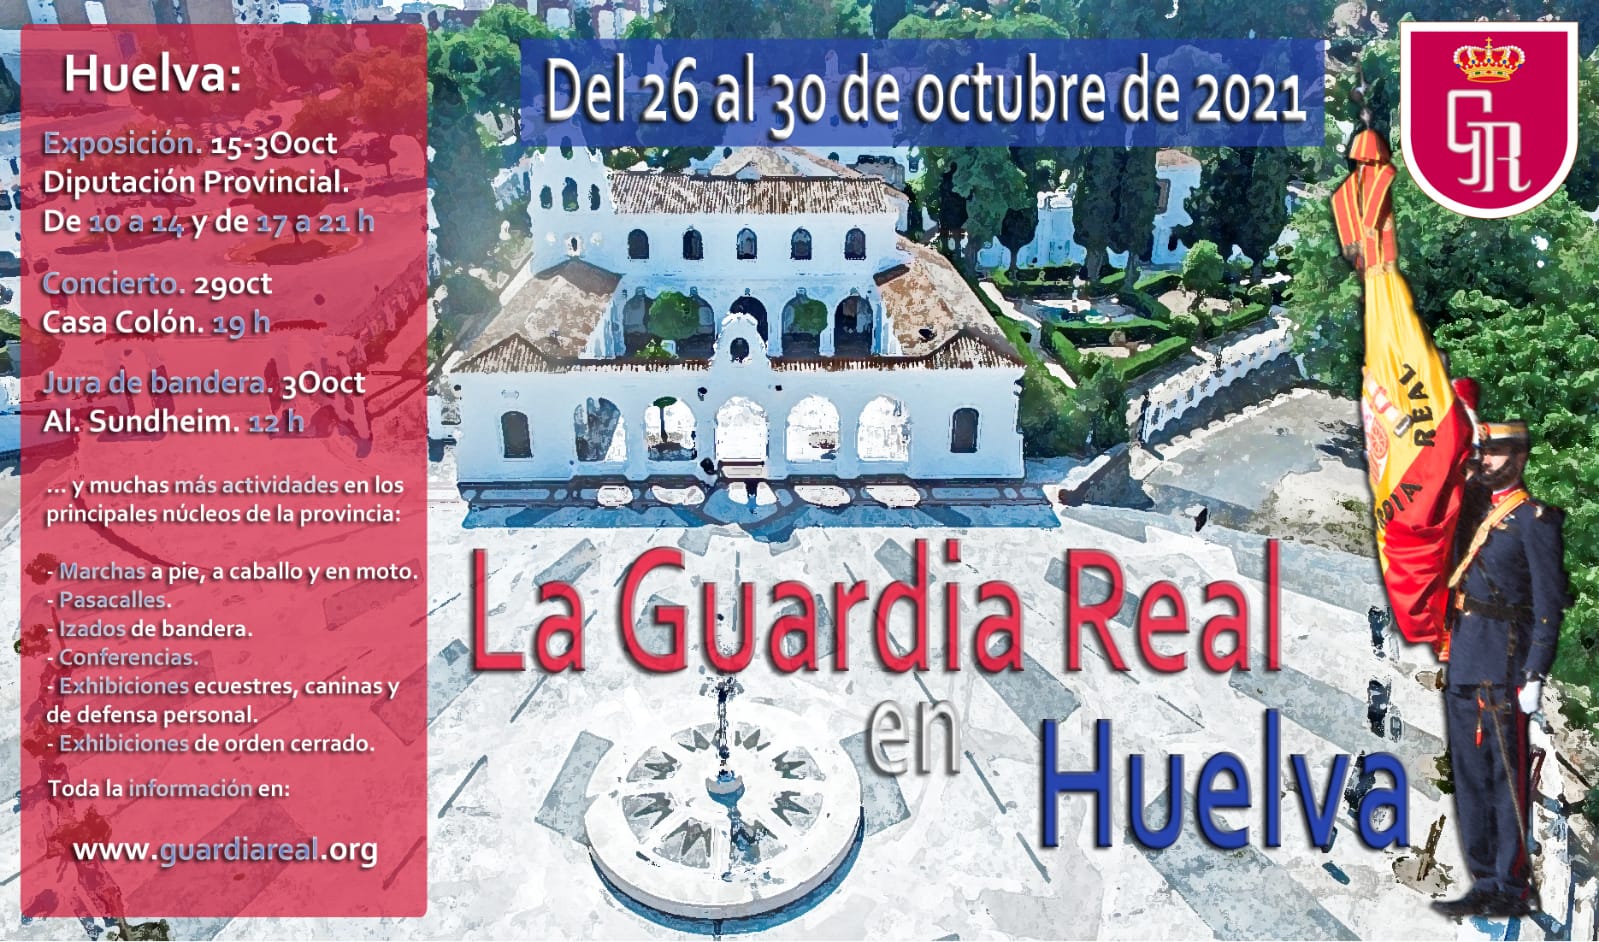 Queremos Saber 14-10-2021 Presentación actividades Guardia Real en Huelva